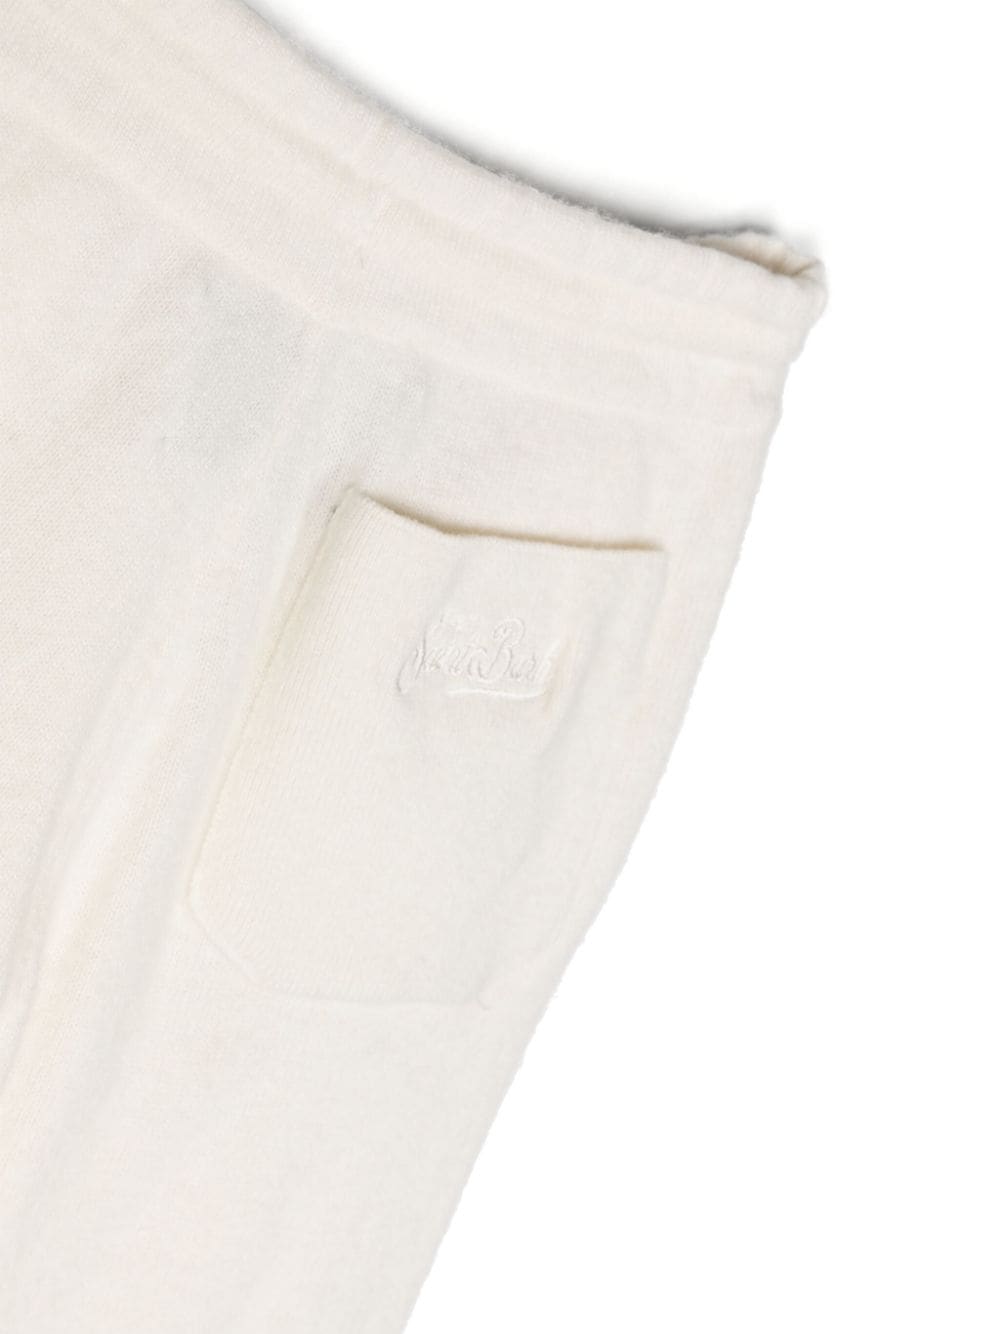 Pantaloni bianchi unisex